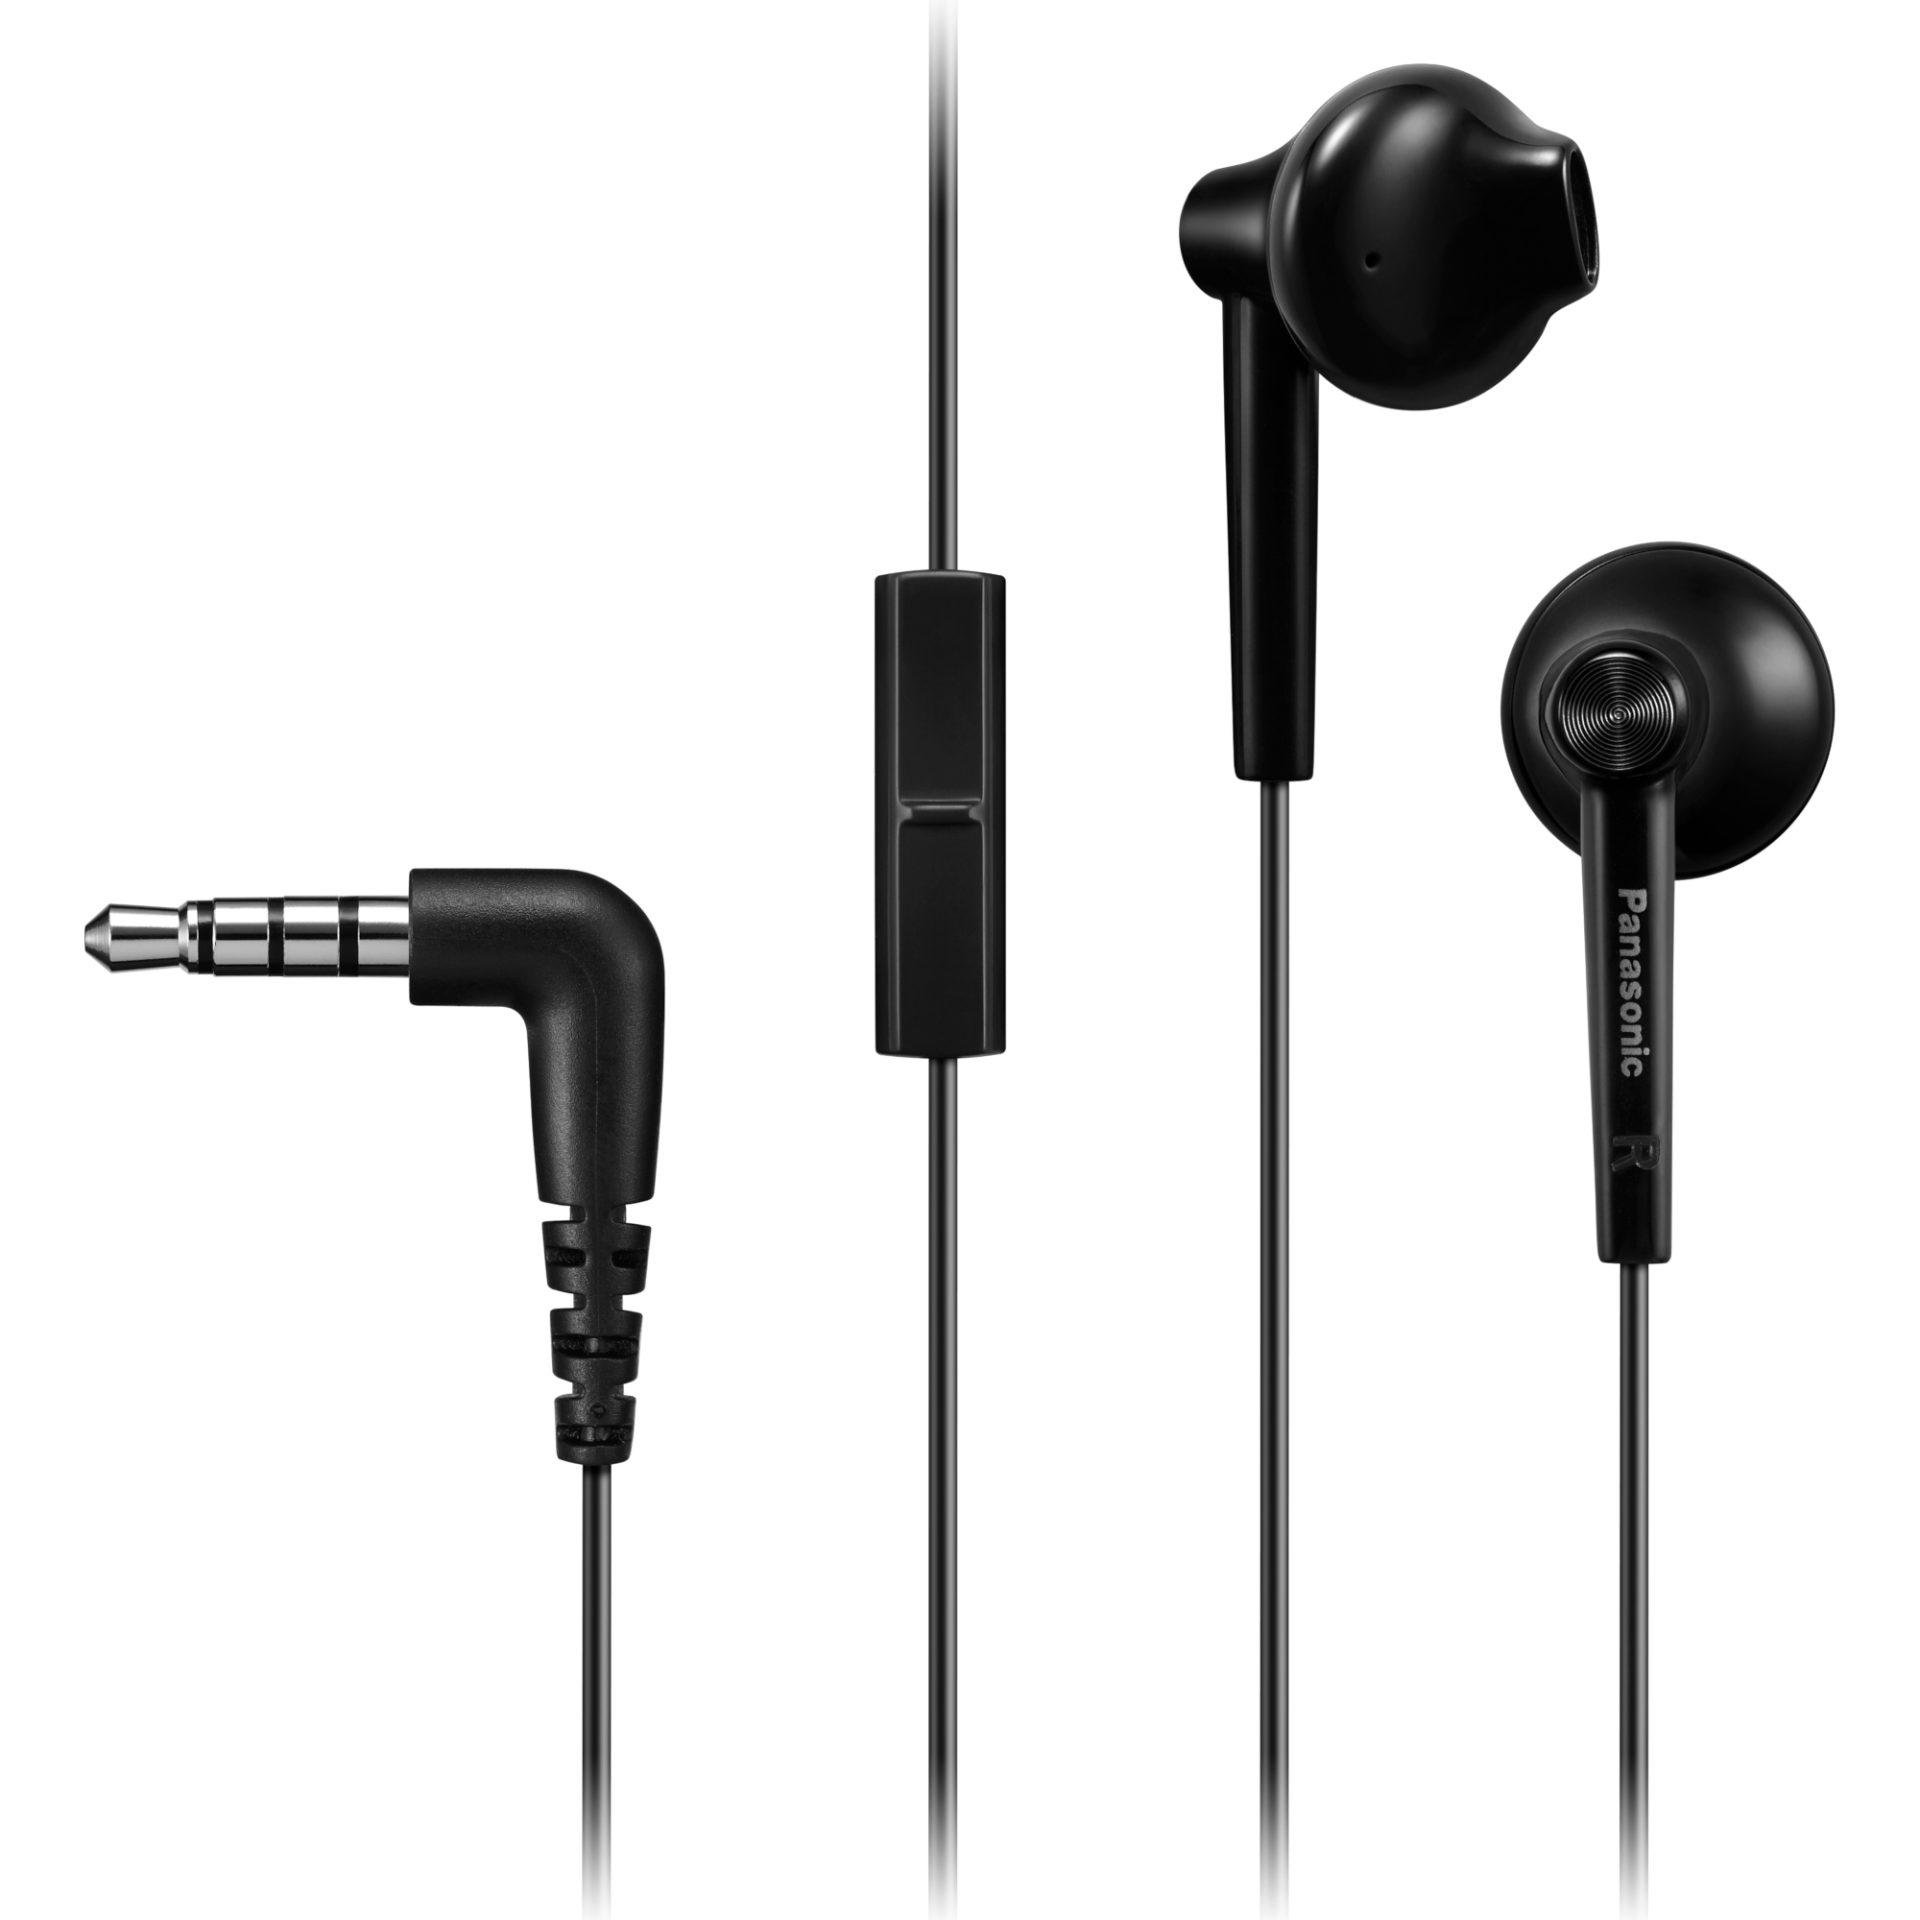 Panasonic RP-TCM55 tradiční sluchátka do uší (14,3mm měniče, neodymový magnet, 10Hz-24kHz, vestavěný mikrofon a dálkové ovládání, 1,2m kabel), černá